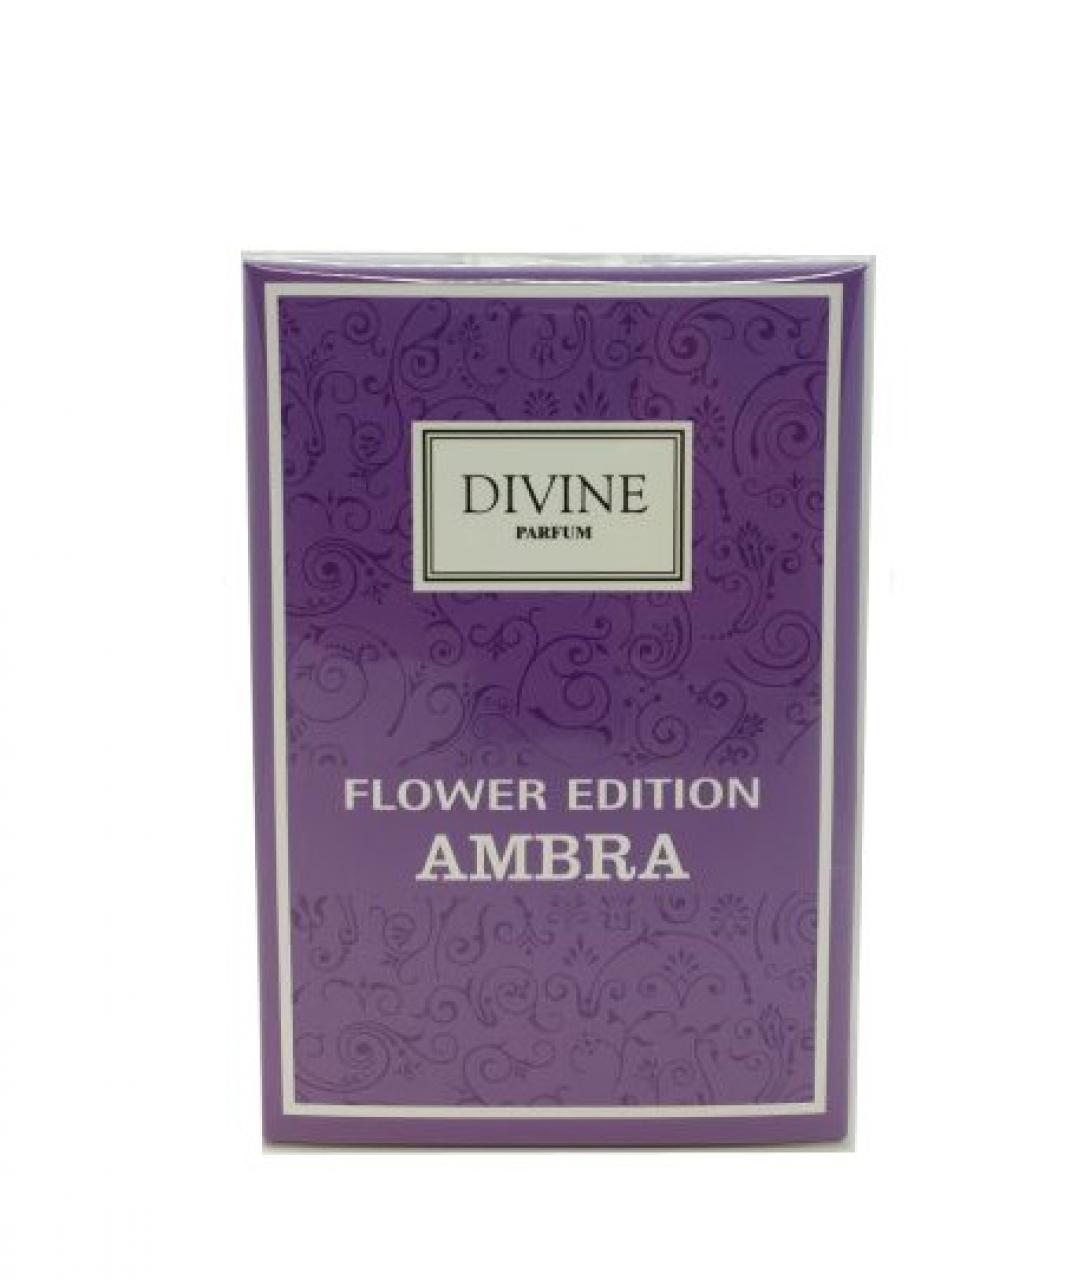 DIVINE PARFUM – FLOWER EDITION AMBRA